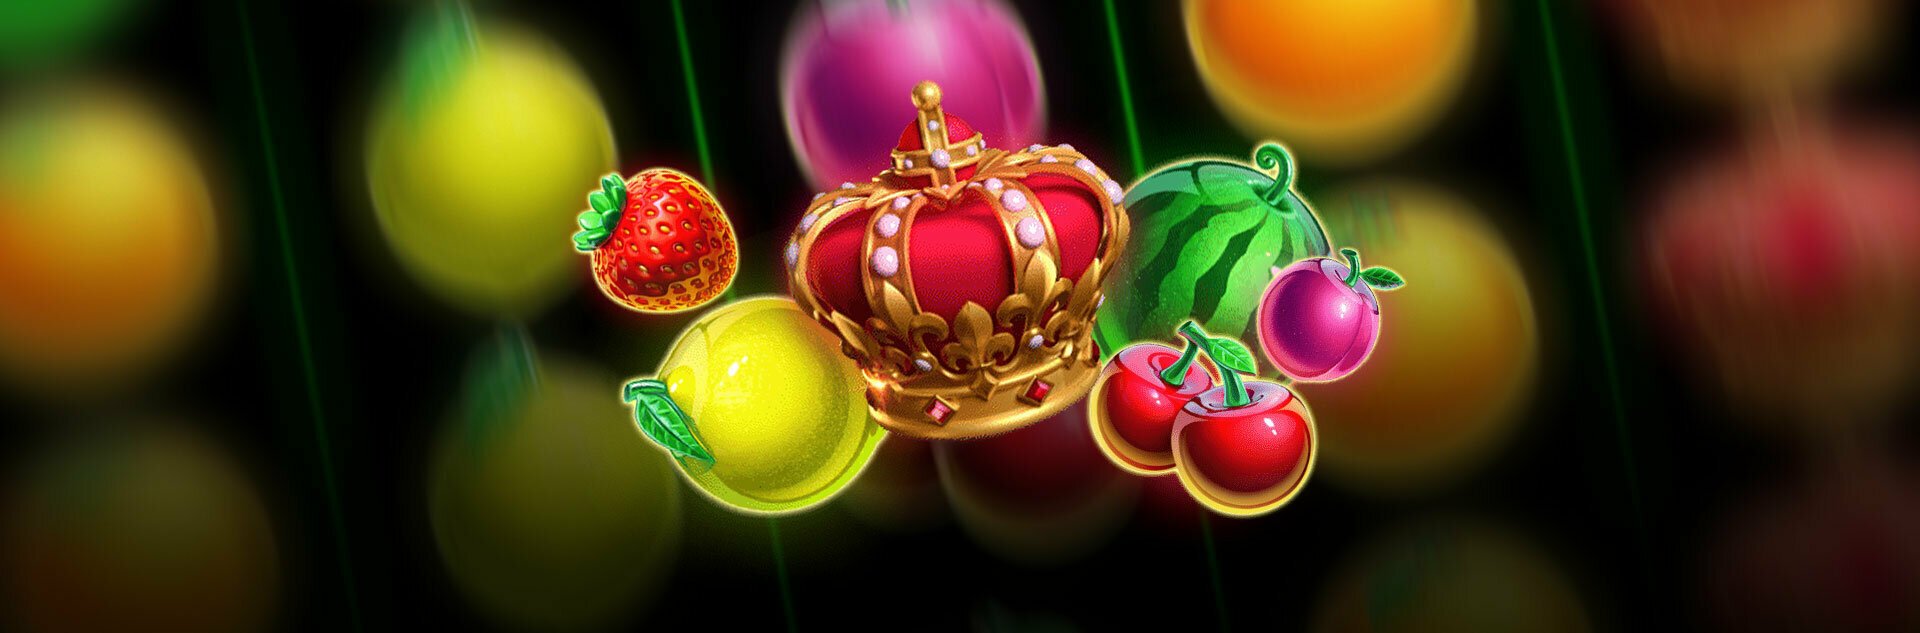 Play Royal Fruits 40 Free Slot